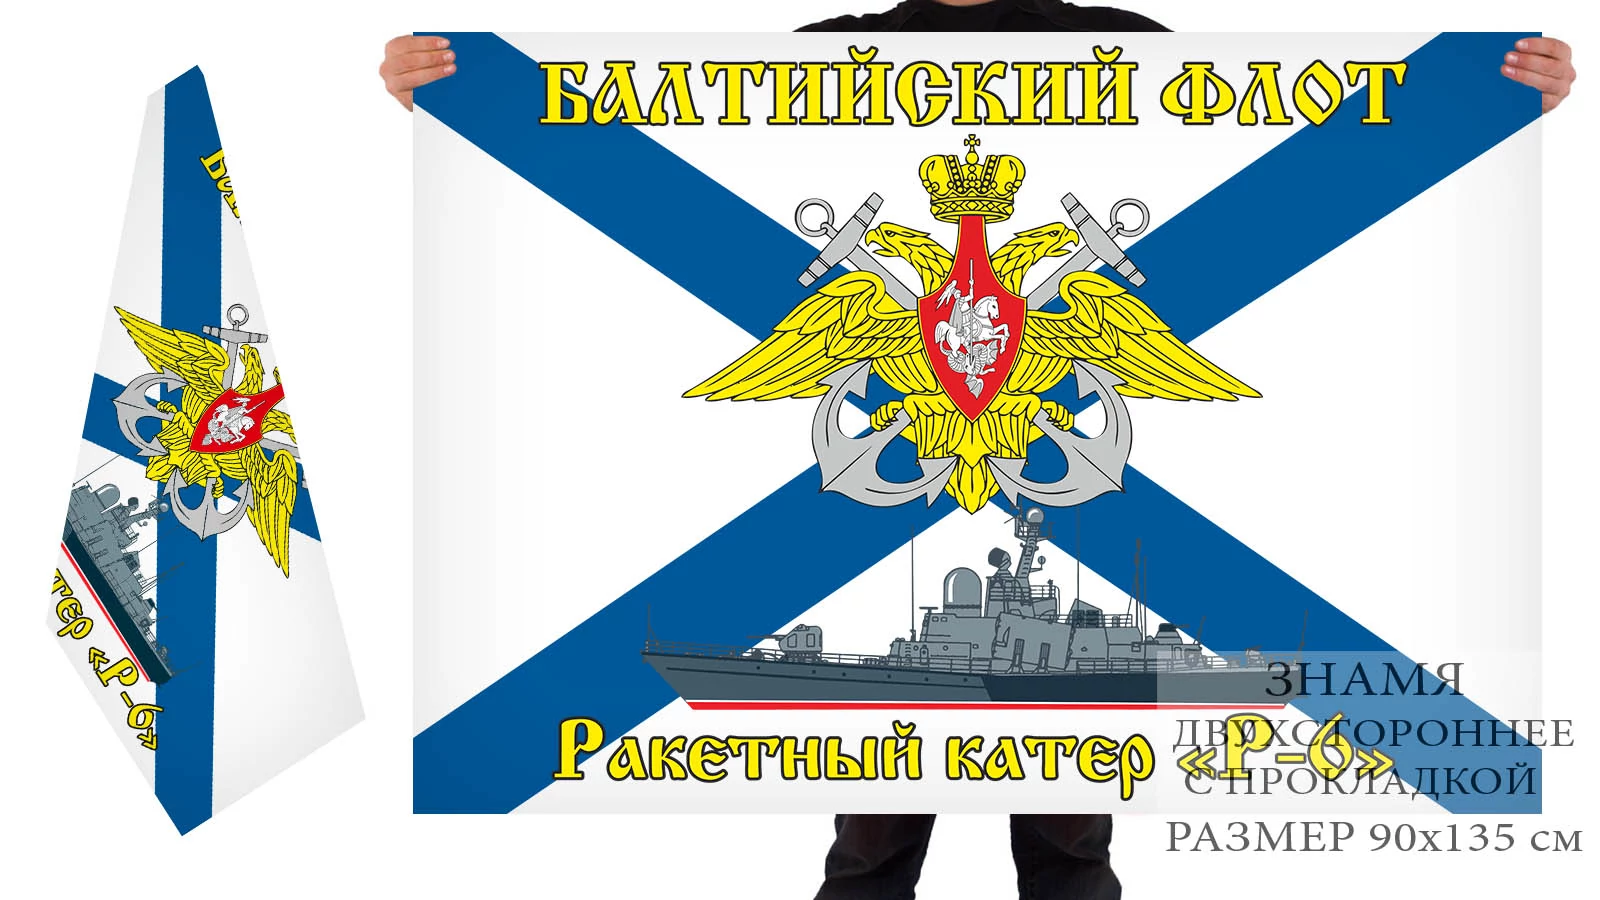 Двусторонний флаг РКА "Р-6"